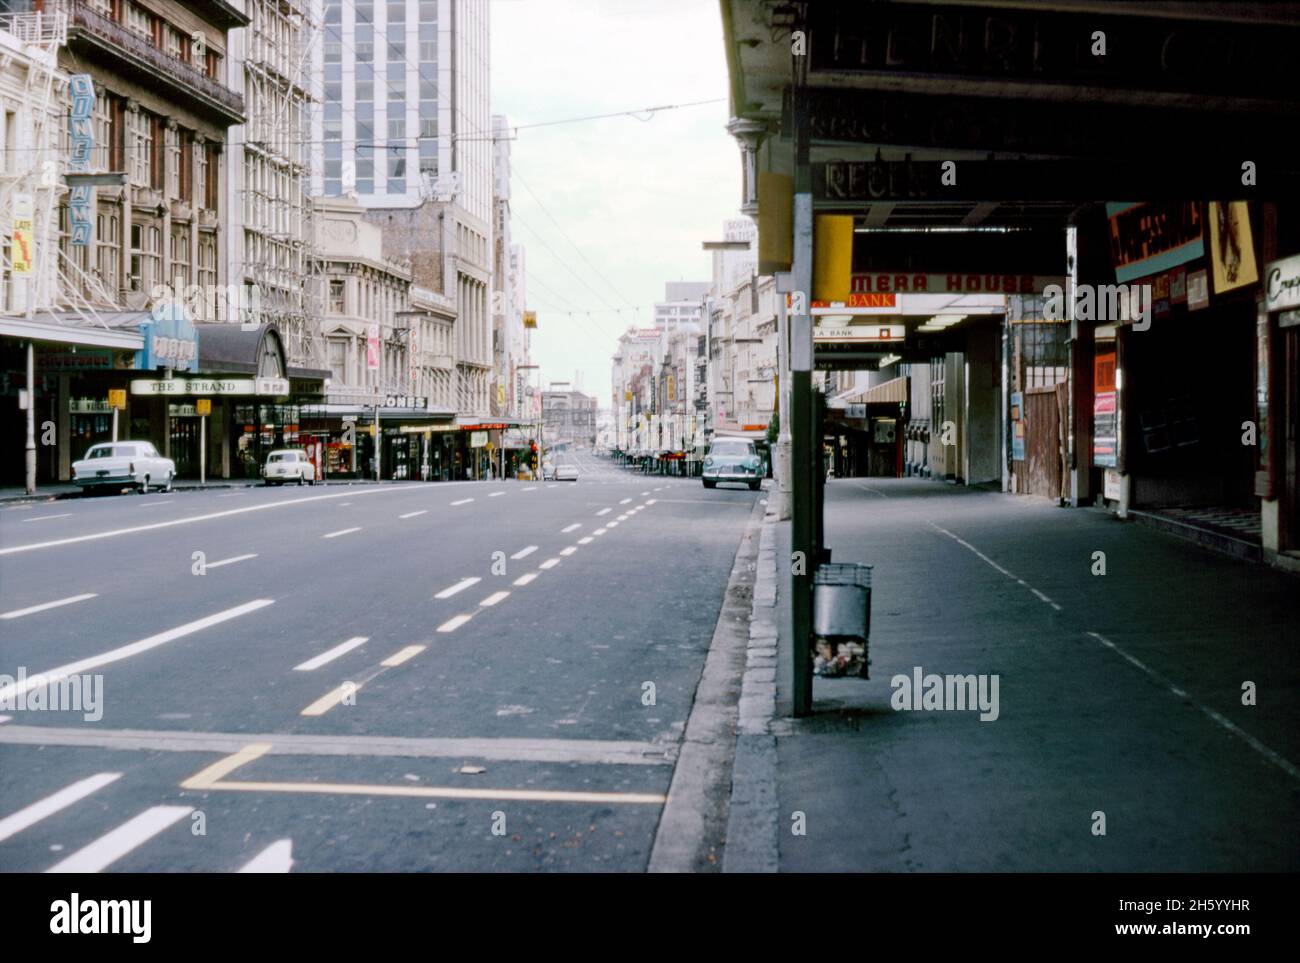 Vue vers le nord sur Queen Street, Auckland, Nouvelle-Zélande en 1973.Le manque de gens et de circulation dans la rue principale de la ville peut signifier que c'est un dimanche.Queen Street est la principale artère commerciale et commerciale du quartier central des affaires (CBD).Le Strand Arcade est à gauche.A côté, le cinéma Cinerama montre le film ‘Deliverance’.Cette image provient d'un ancien transparent couleur Kodak amateur, une photographie vintage des années 1970. Banque D'Images